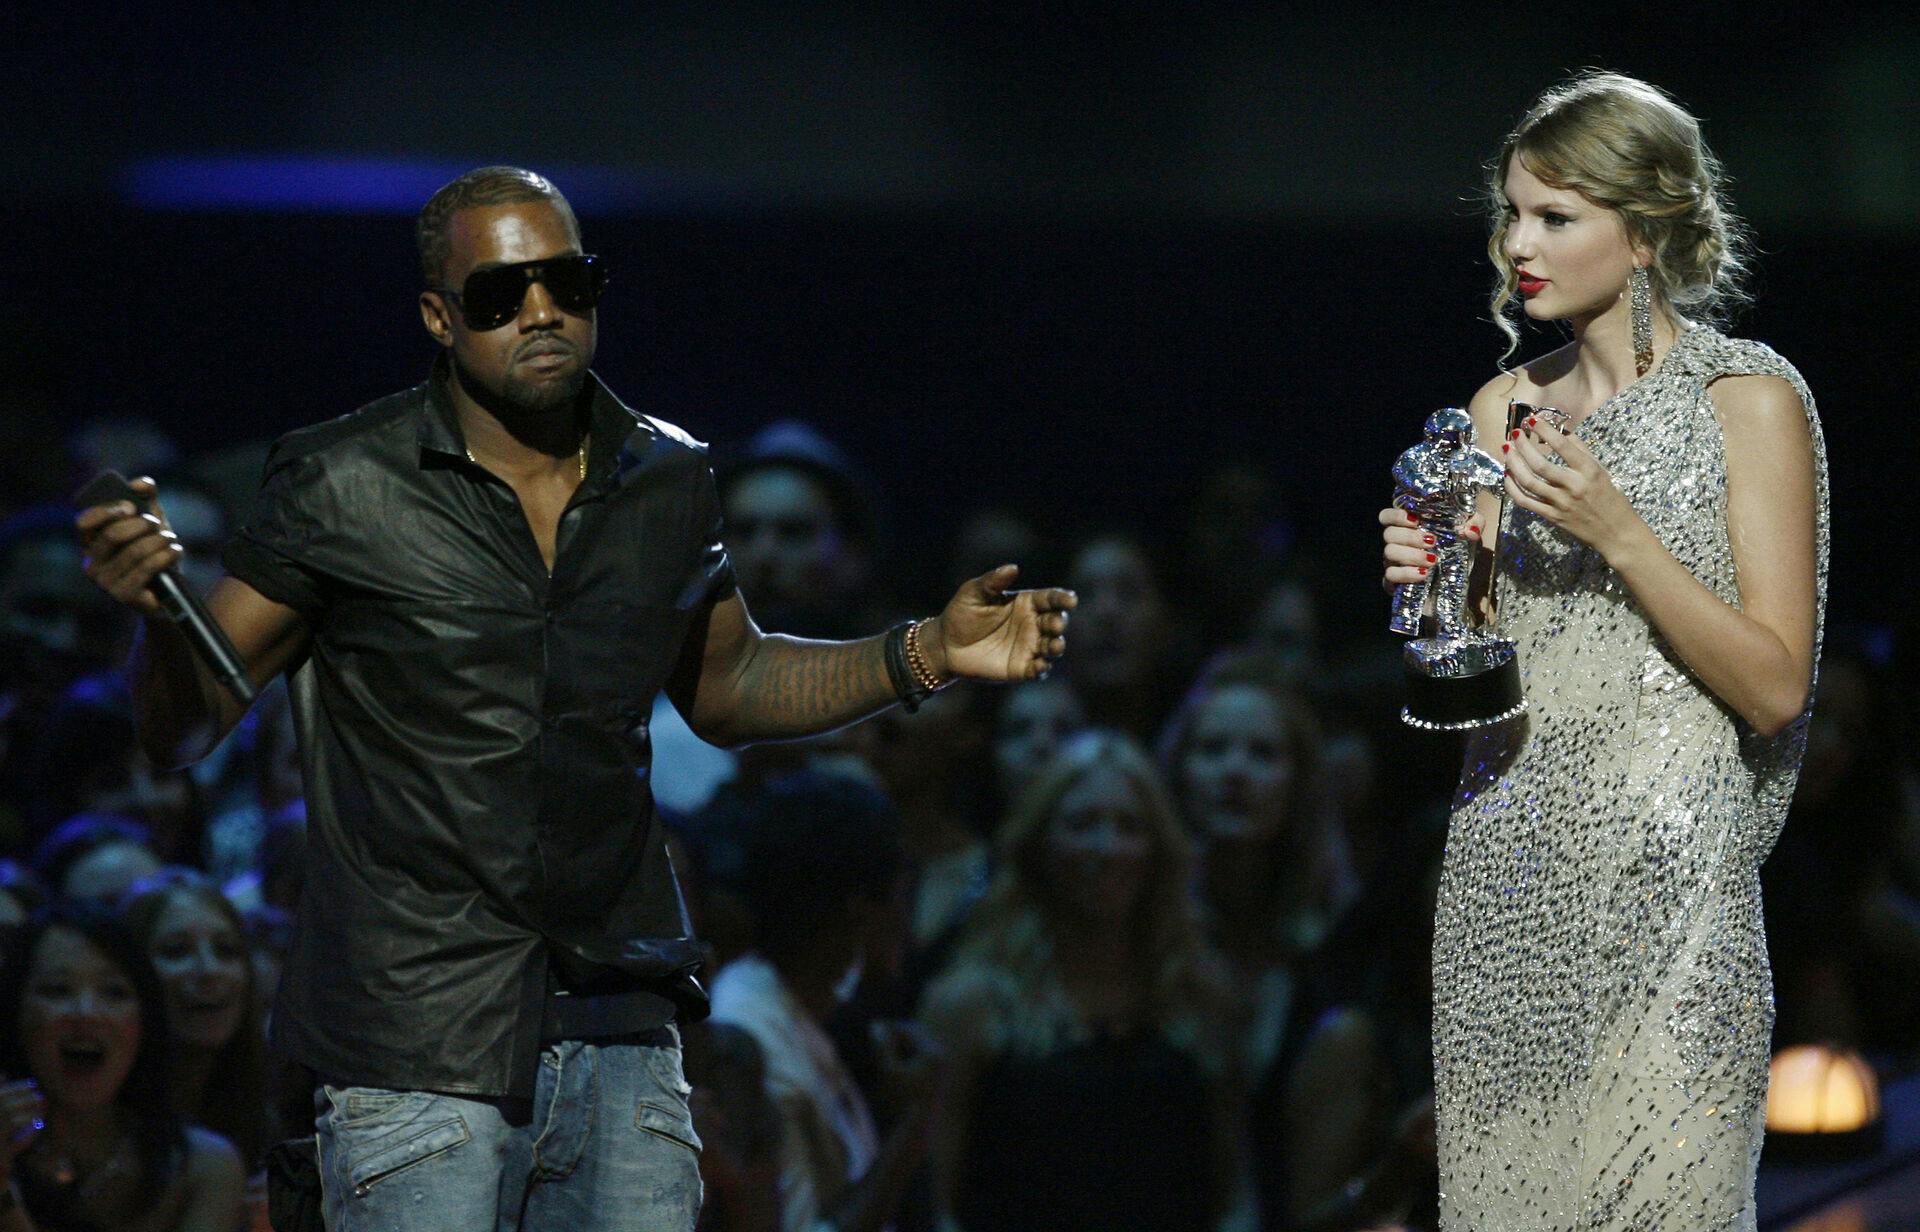 Faktisk trækker striden tråde tilbage til 2009, hvor Kanye West indtog scenen til MTV Video Music Awards for at fortælle, at Beyoncé skulle have vundet den pris, Taylor Swift netop havde fået overrakt.